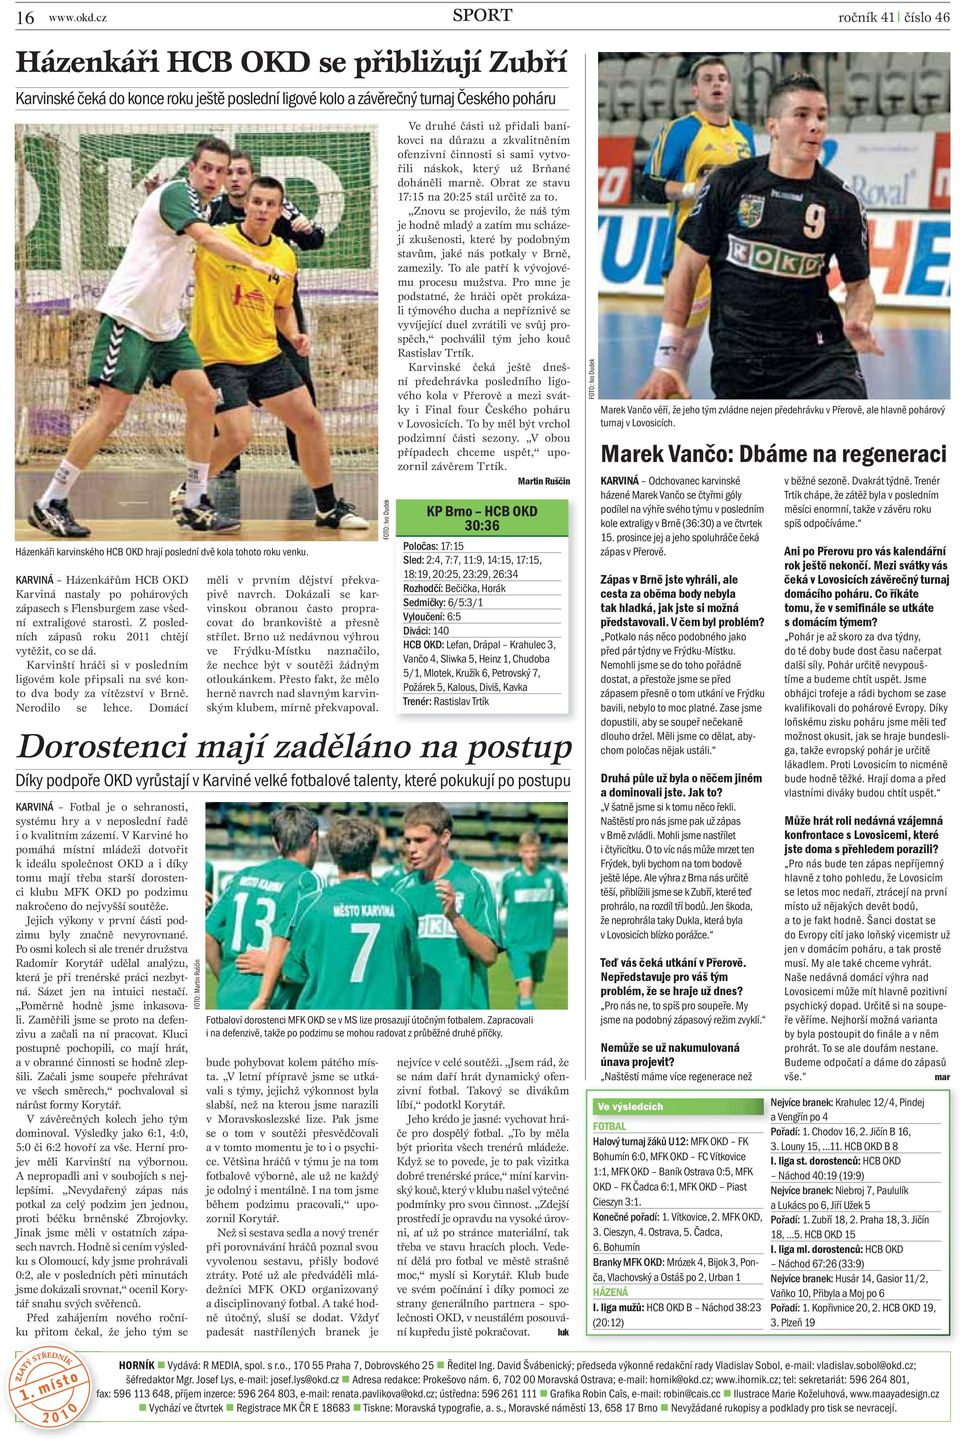 poslední dvě kola tohoto roku venku. KARVINÁ Házenkářům HCB OKD Karviná nastaly po pohárových zápasech s Flensburgem zase všední extraligové starosti.